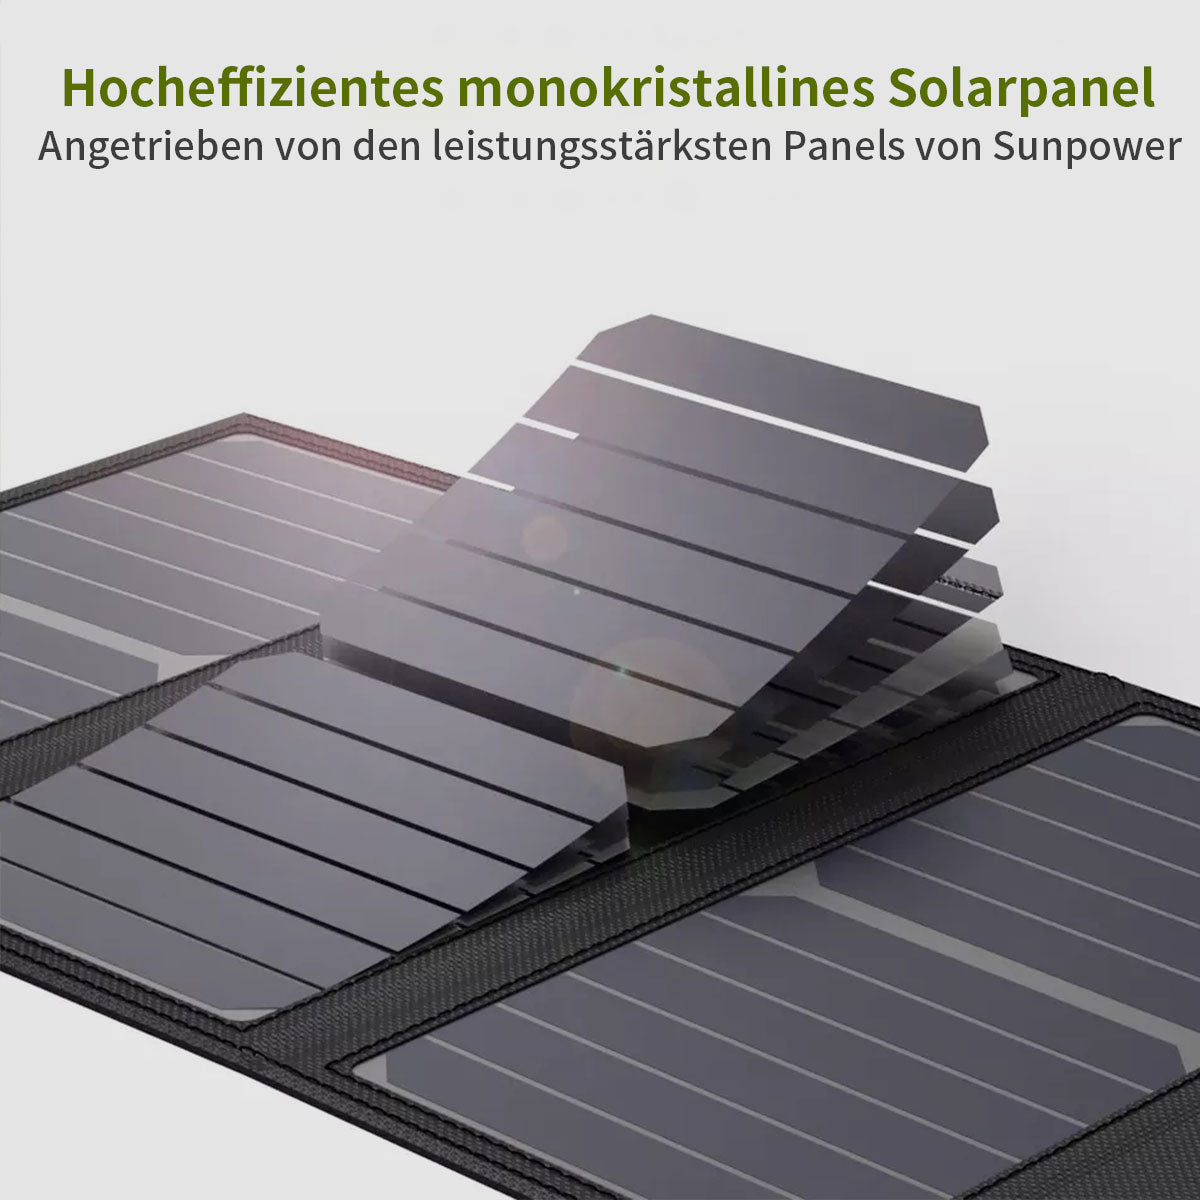 ALLPOWERS 5V 21W solar panel built-in 10000mAh battery SP002 